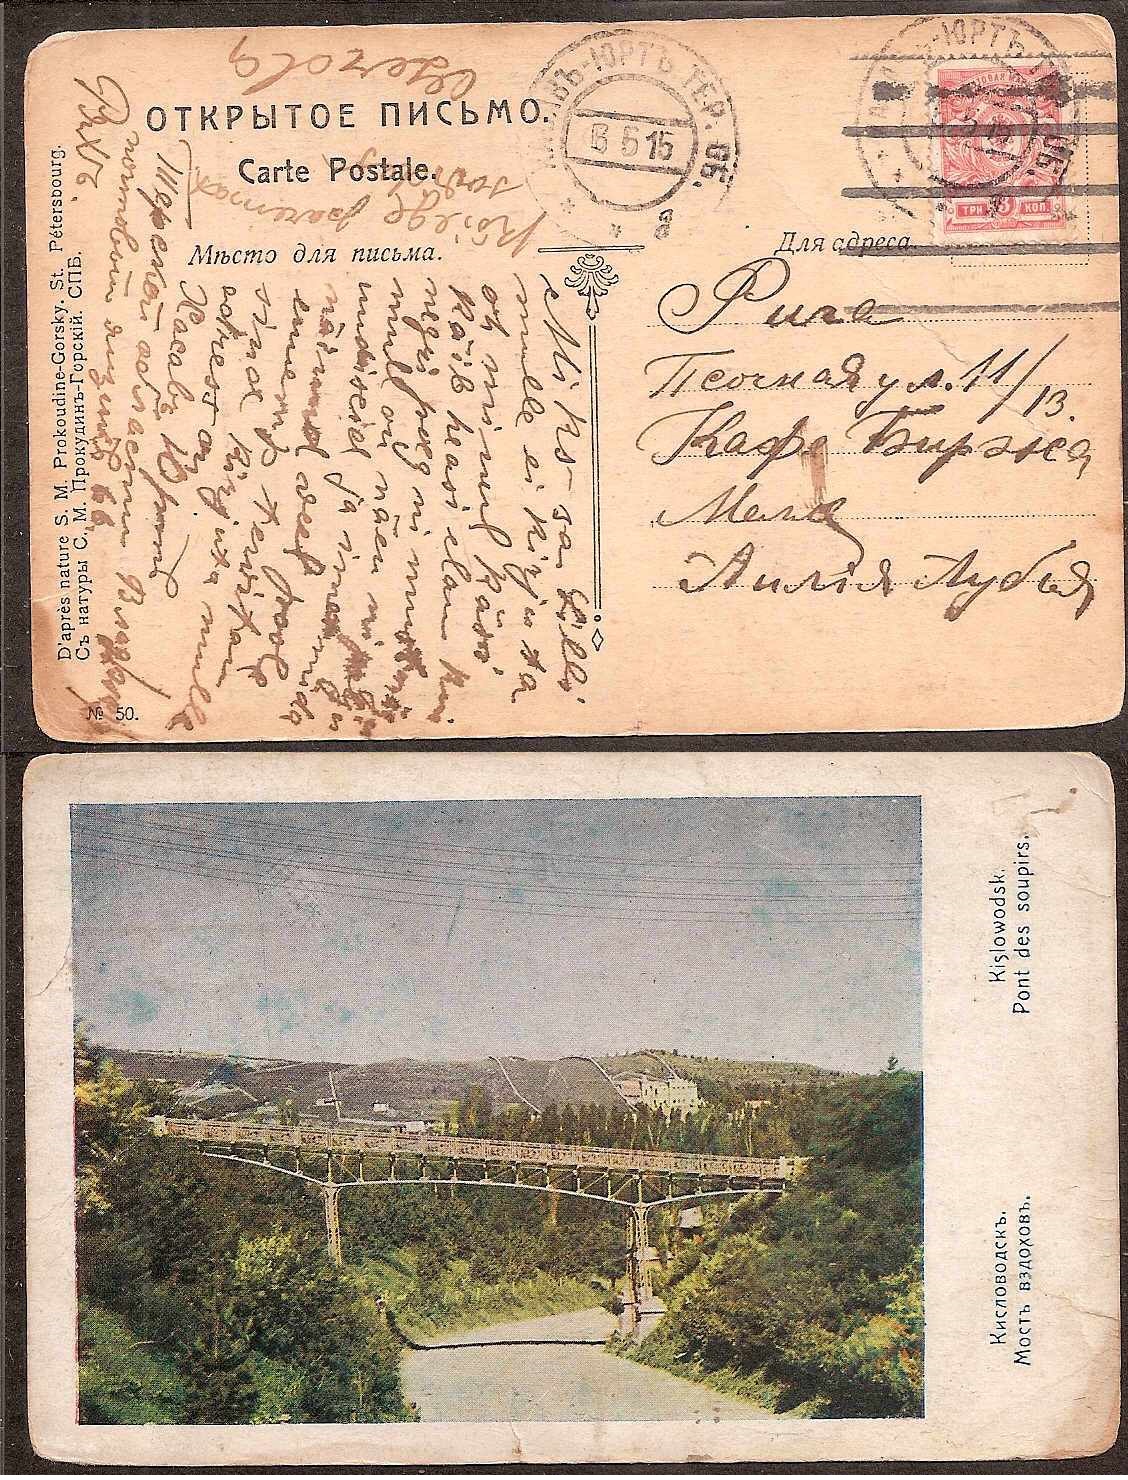 Russia Postal History - Georgia georgia Scott 1915 